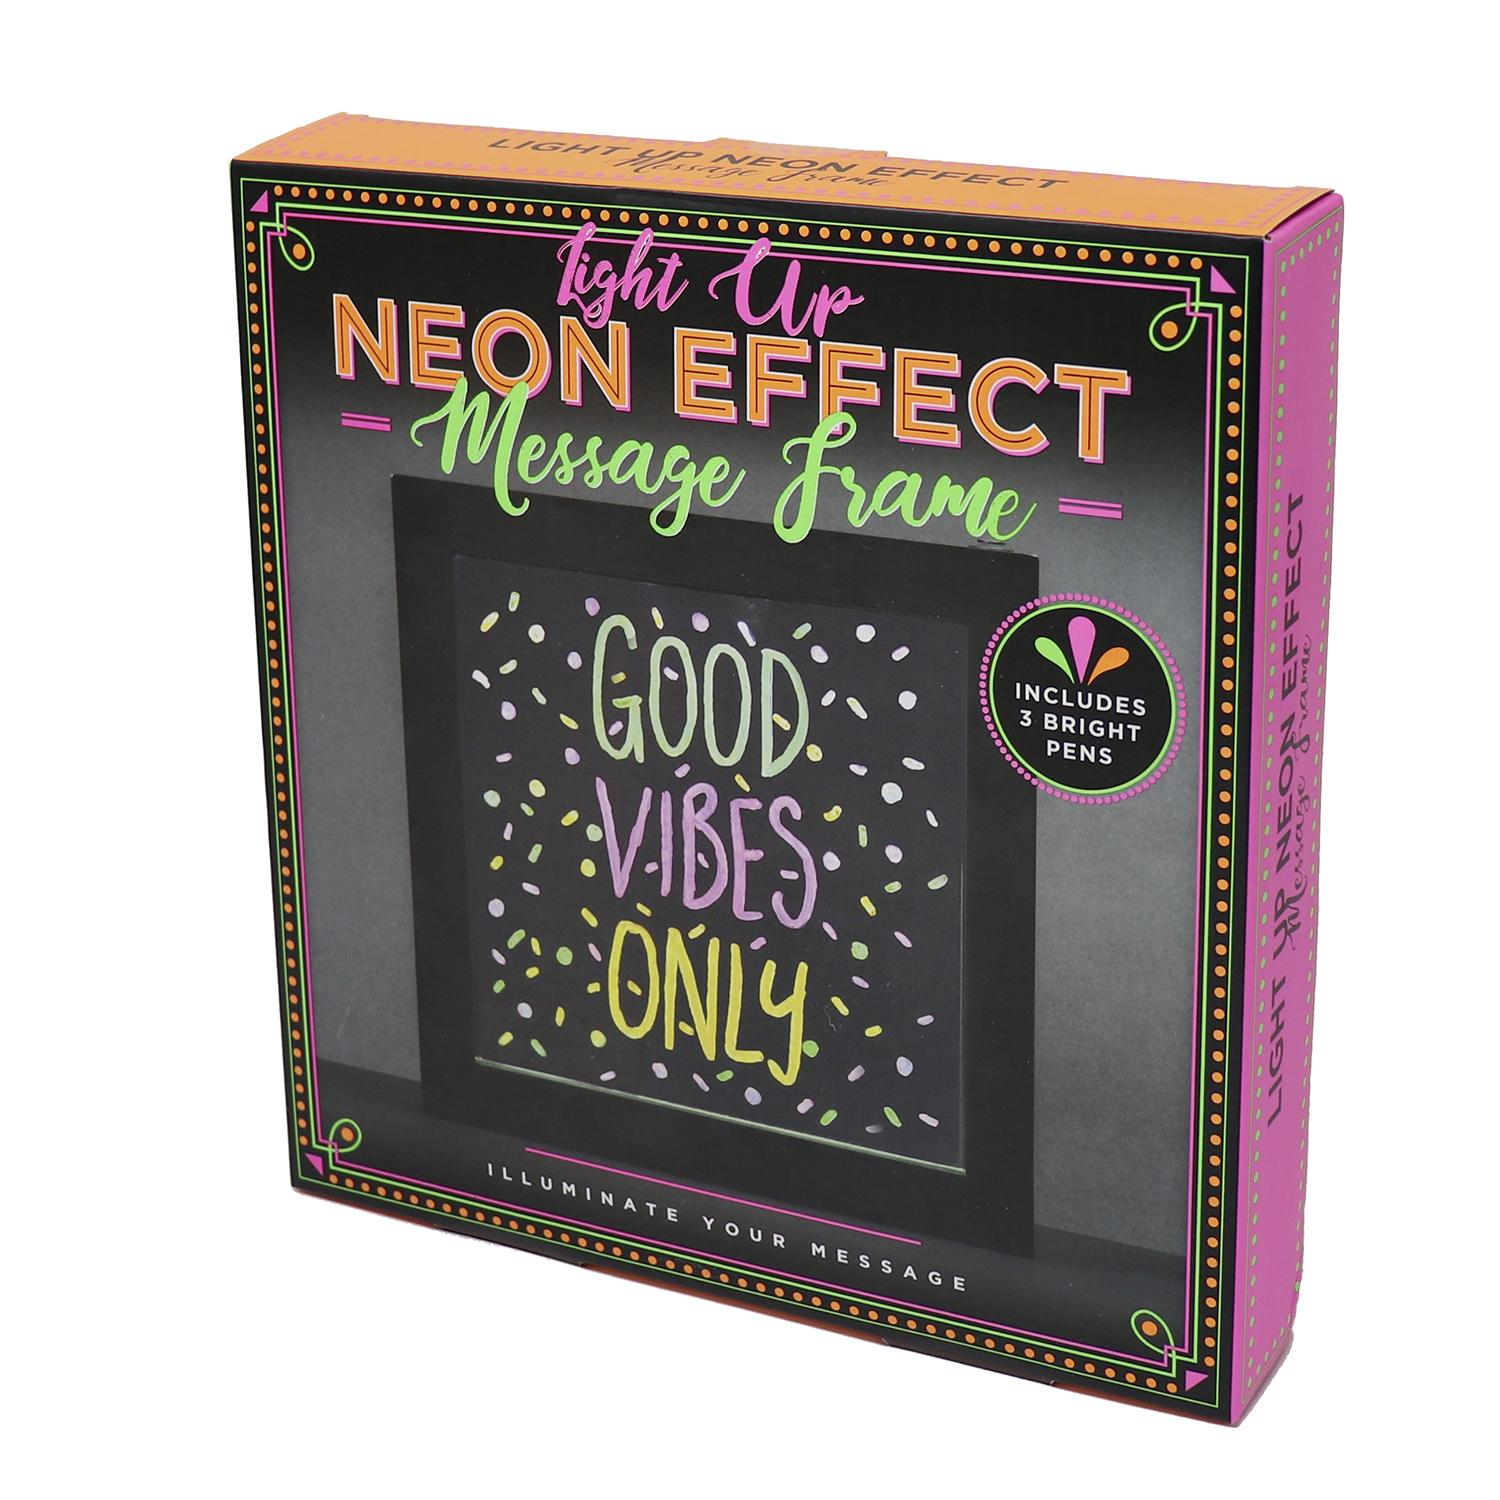 FIZZ CREATIONS Neon Effect Light Up Message Frame Merchandise